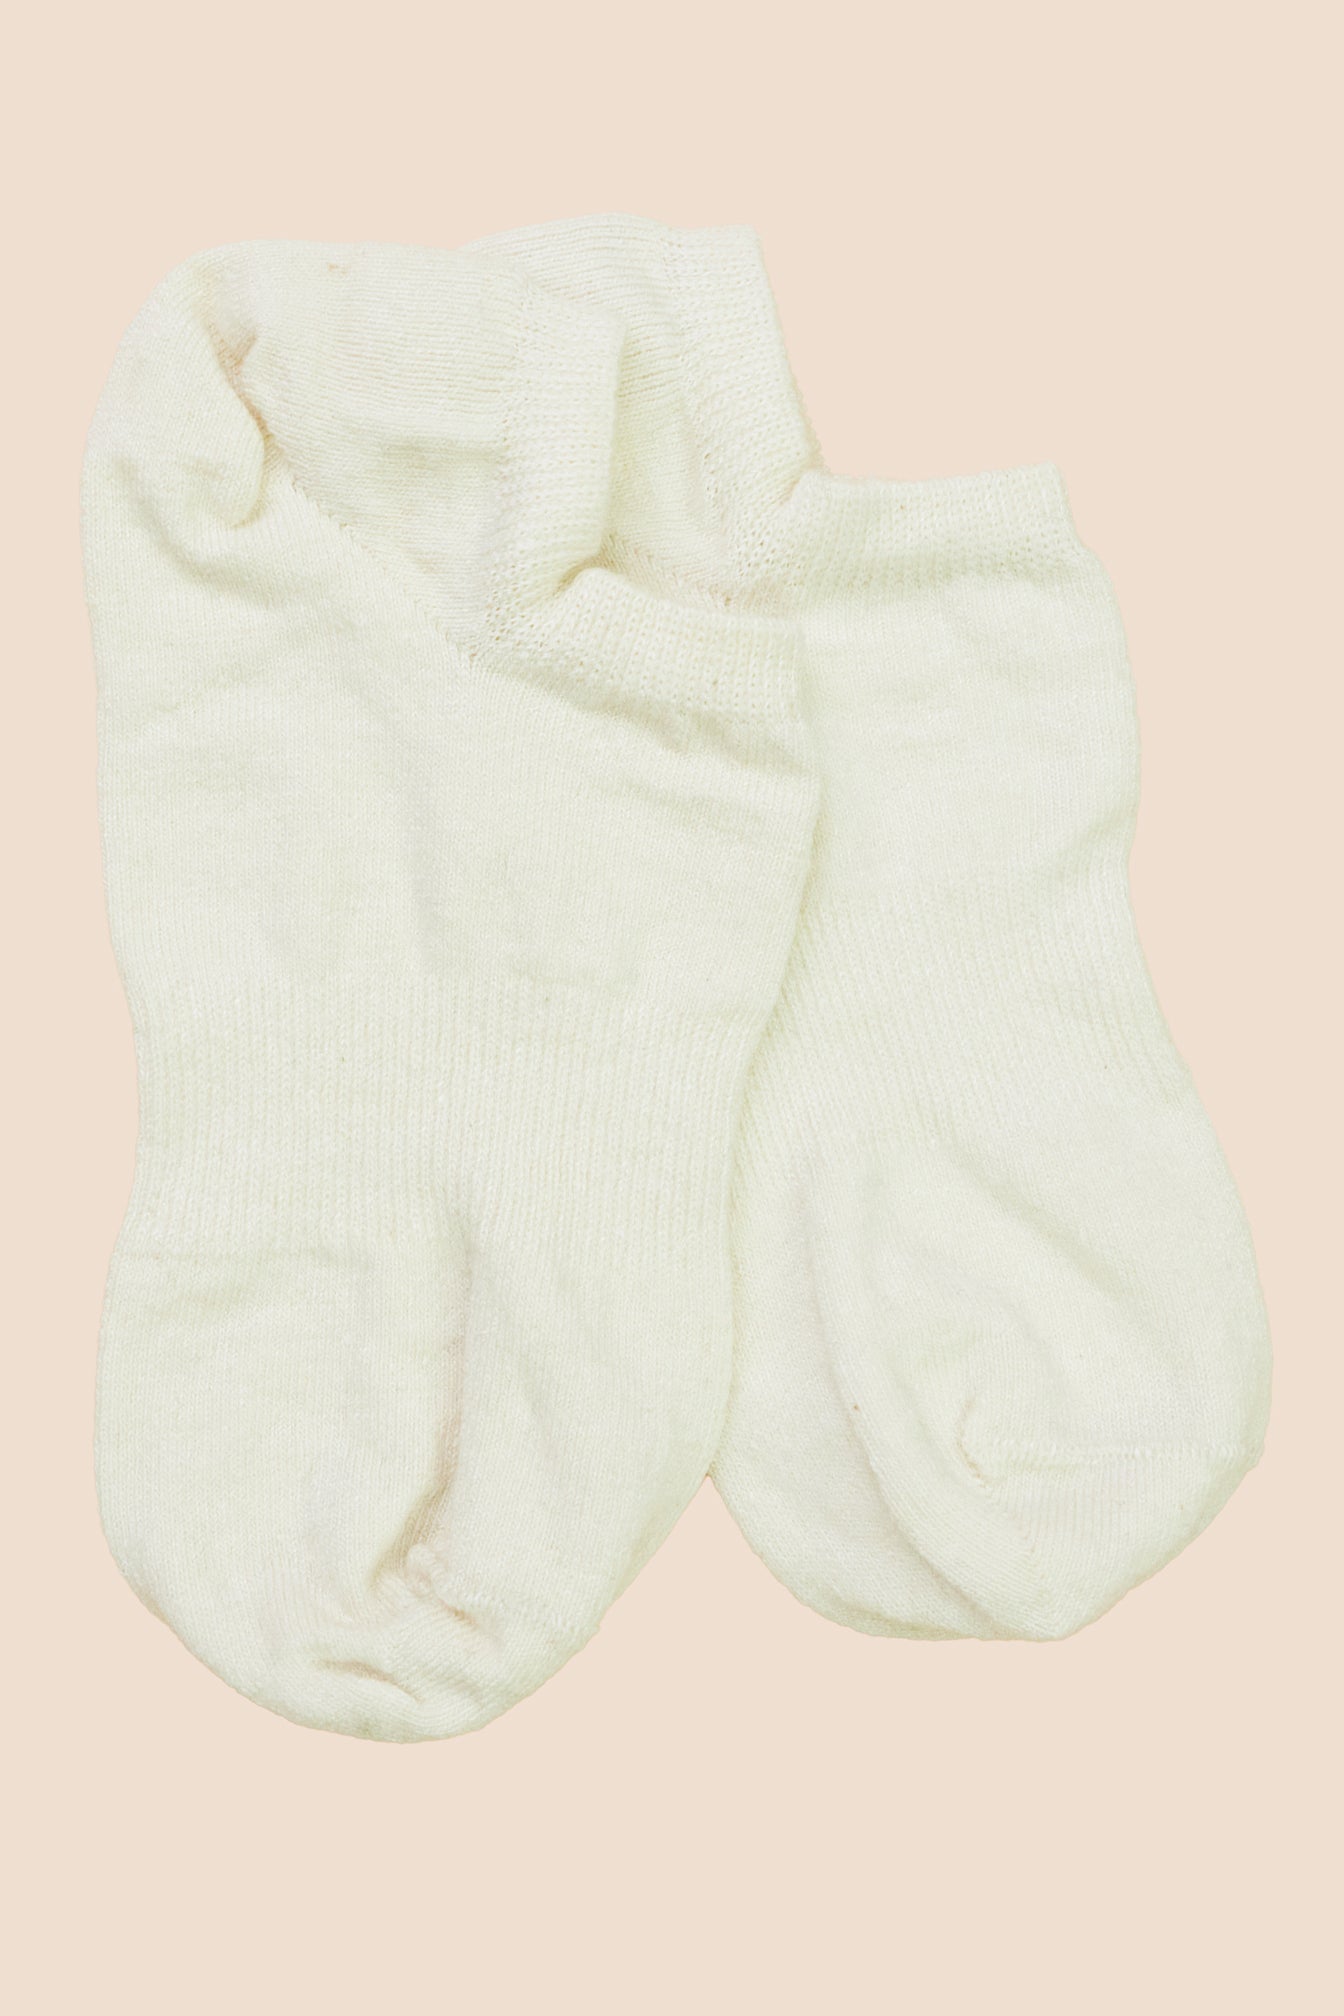 Pétrone chaussettes invisibles lin coton blanc crème pour hommes